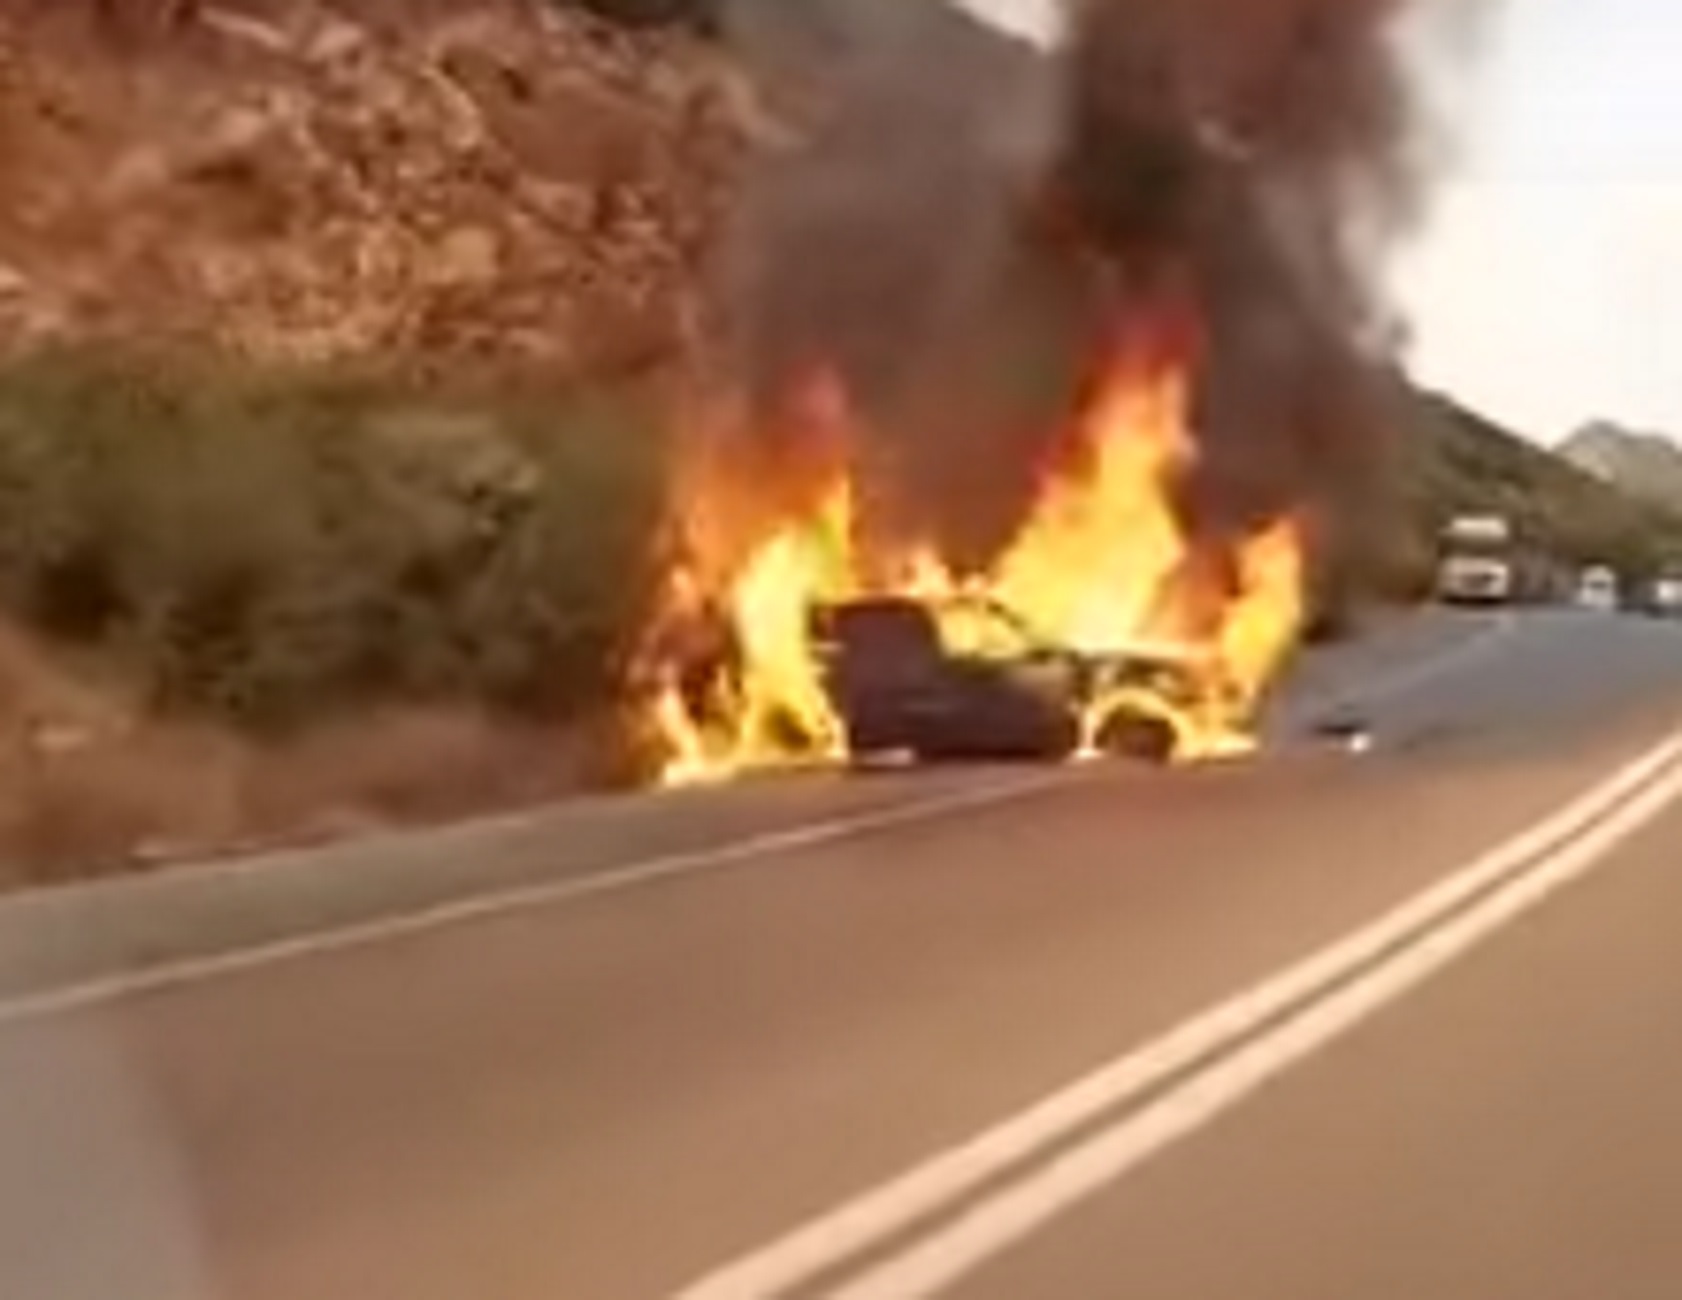 Ρέθυμνο: Η στιγμή που αυτοκίνητο πιάνει φωτιά στην εθνική οδό και καταστρέφεται ολοσχερώς